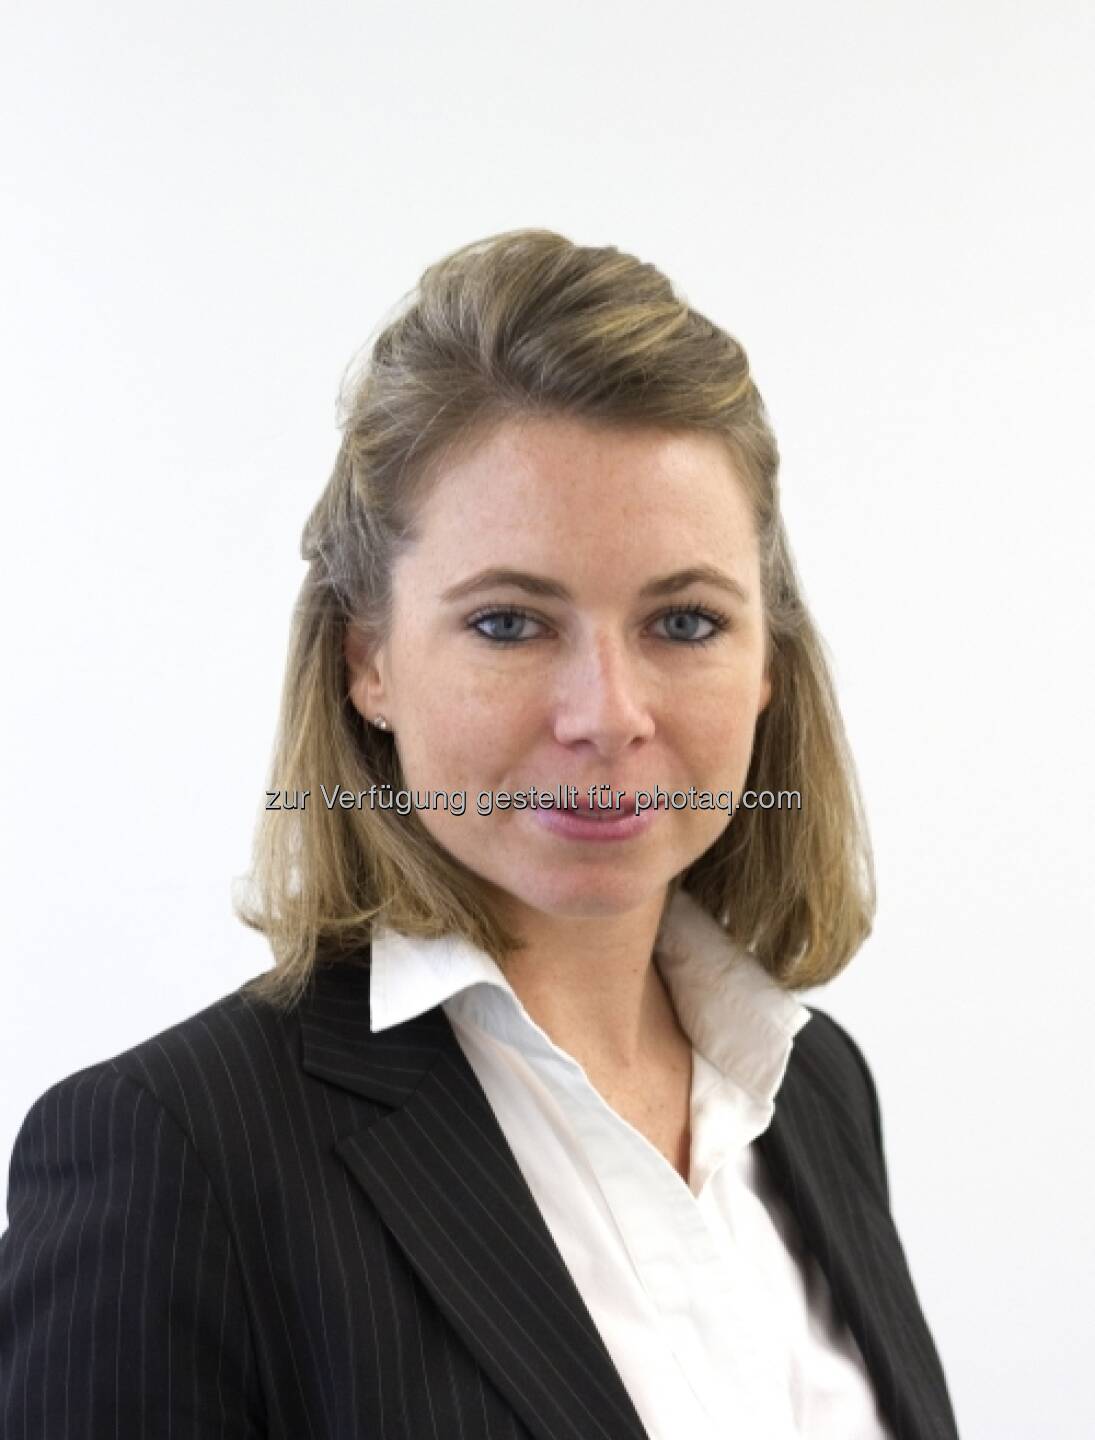 ETF Securities: Melanie Svalander ist künftig als Kommunikationsdirektorin am Londoner Standort tätig. Sie berichtet an Steve Setton, der die Marketing- und Kommunikationsabteilung leitet